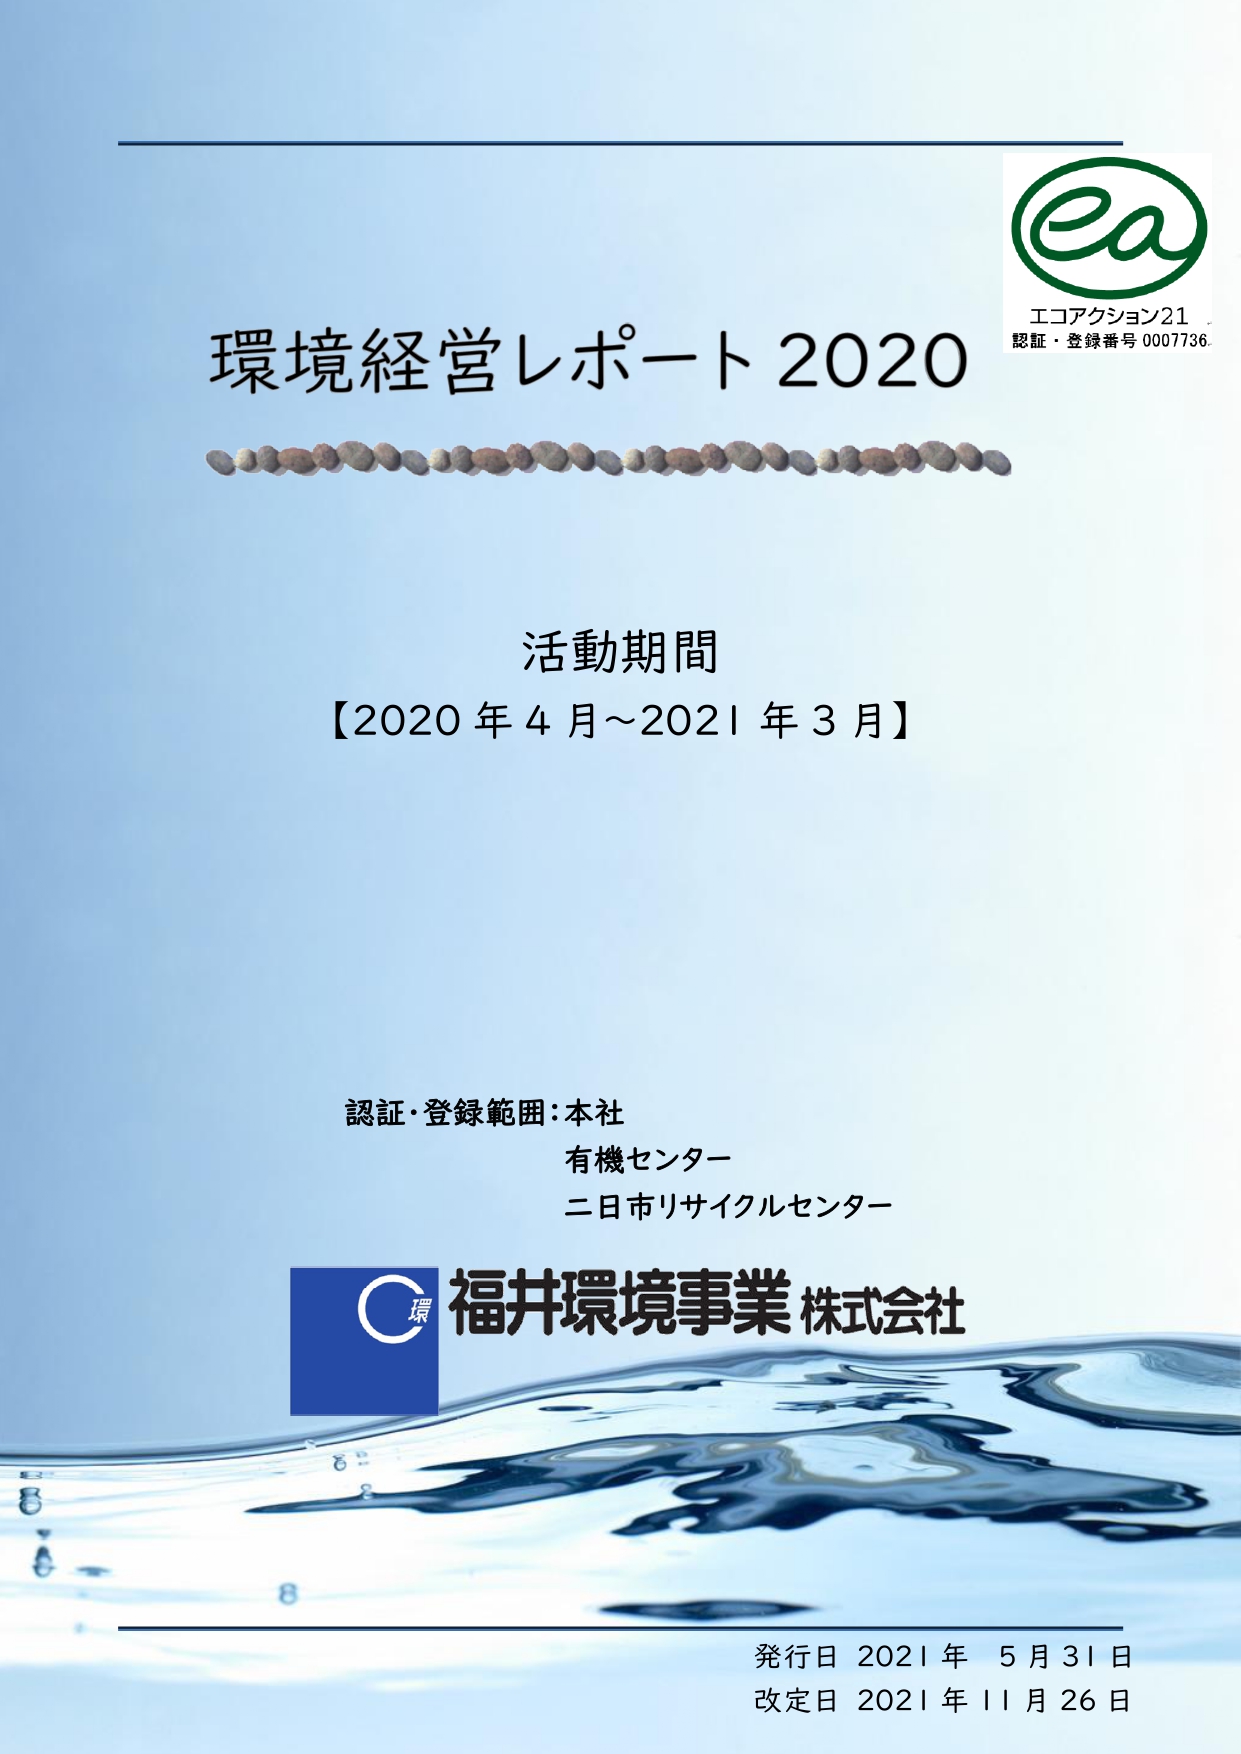 環境活動レポート2020年度版を公開しました。